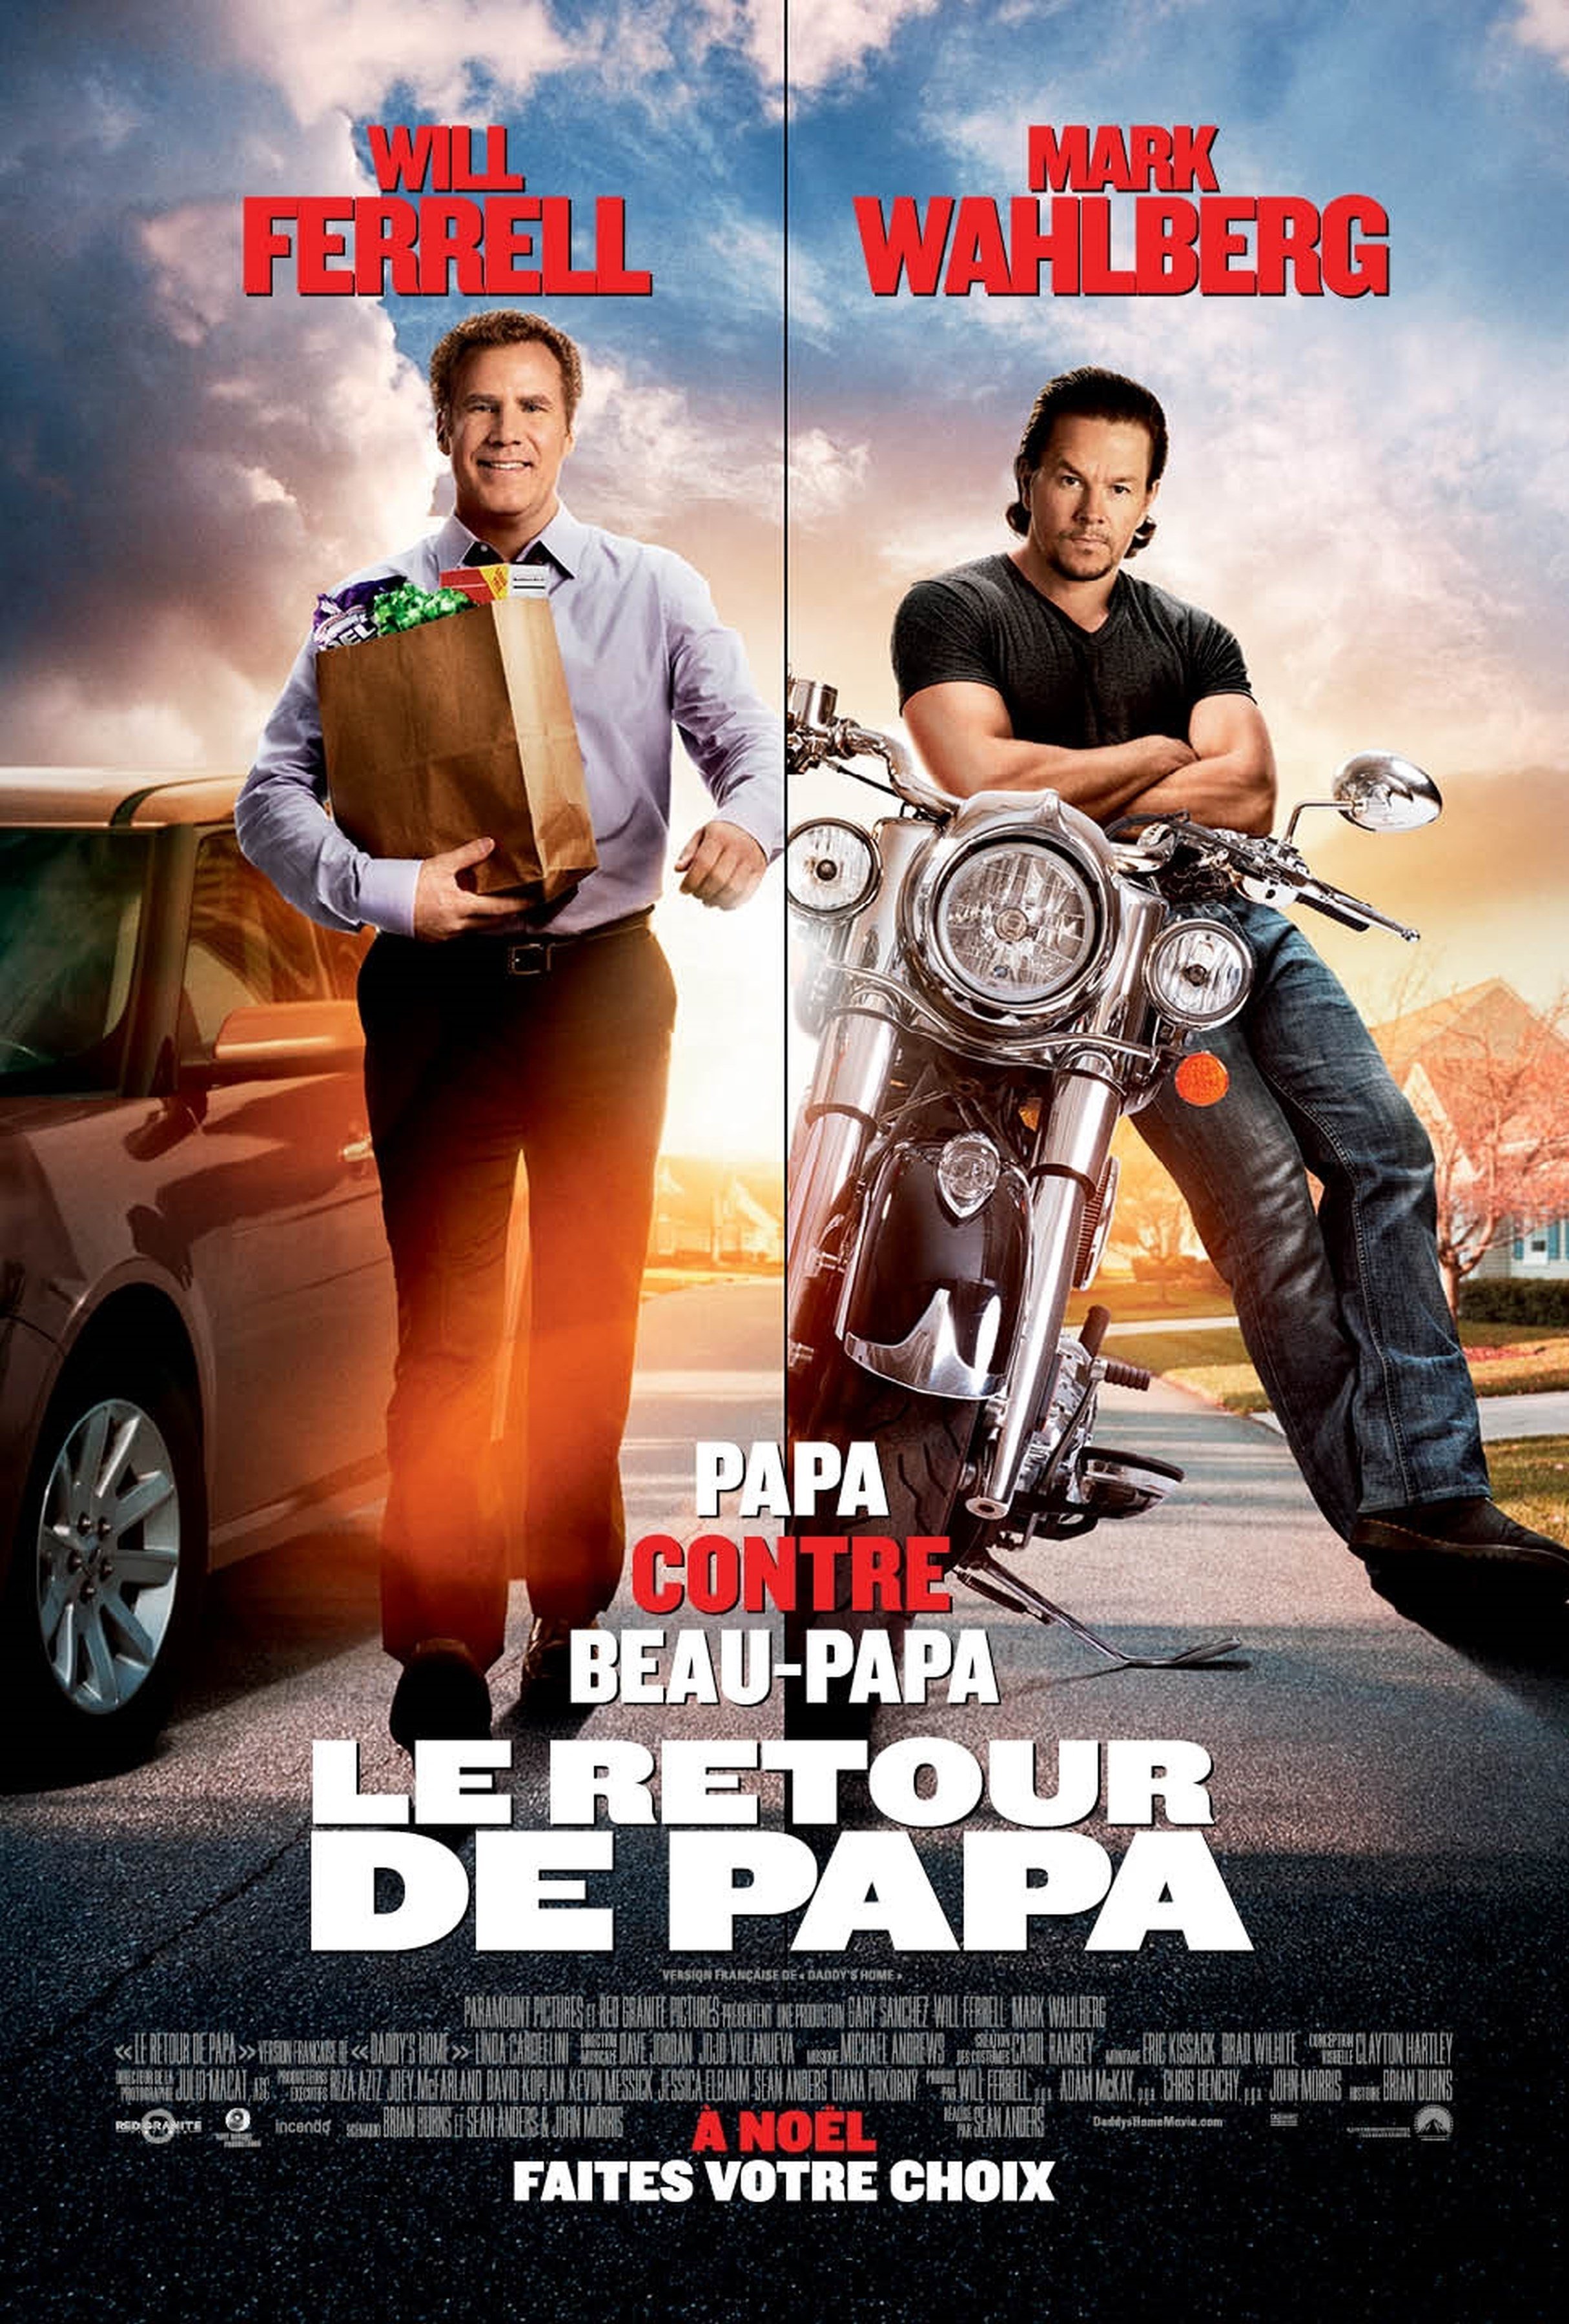 Poster of the movie Le Retour de papa